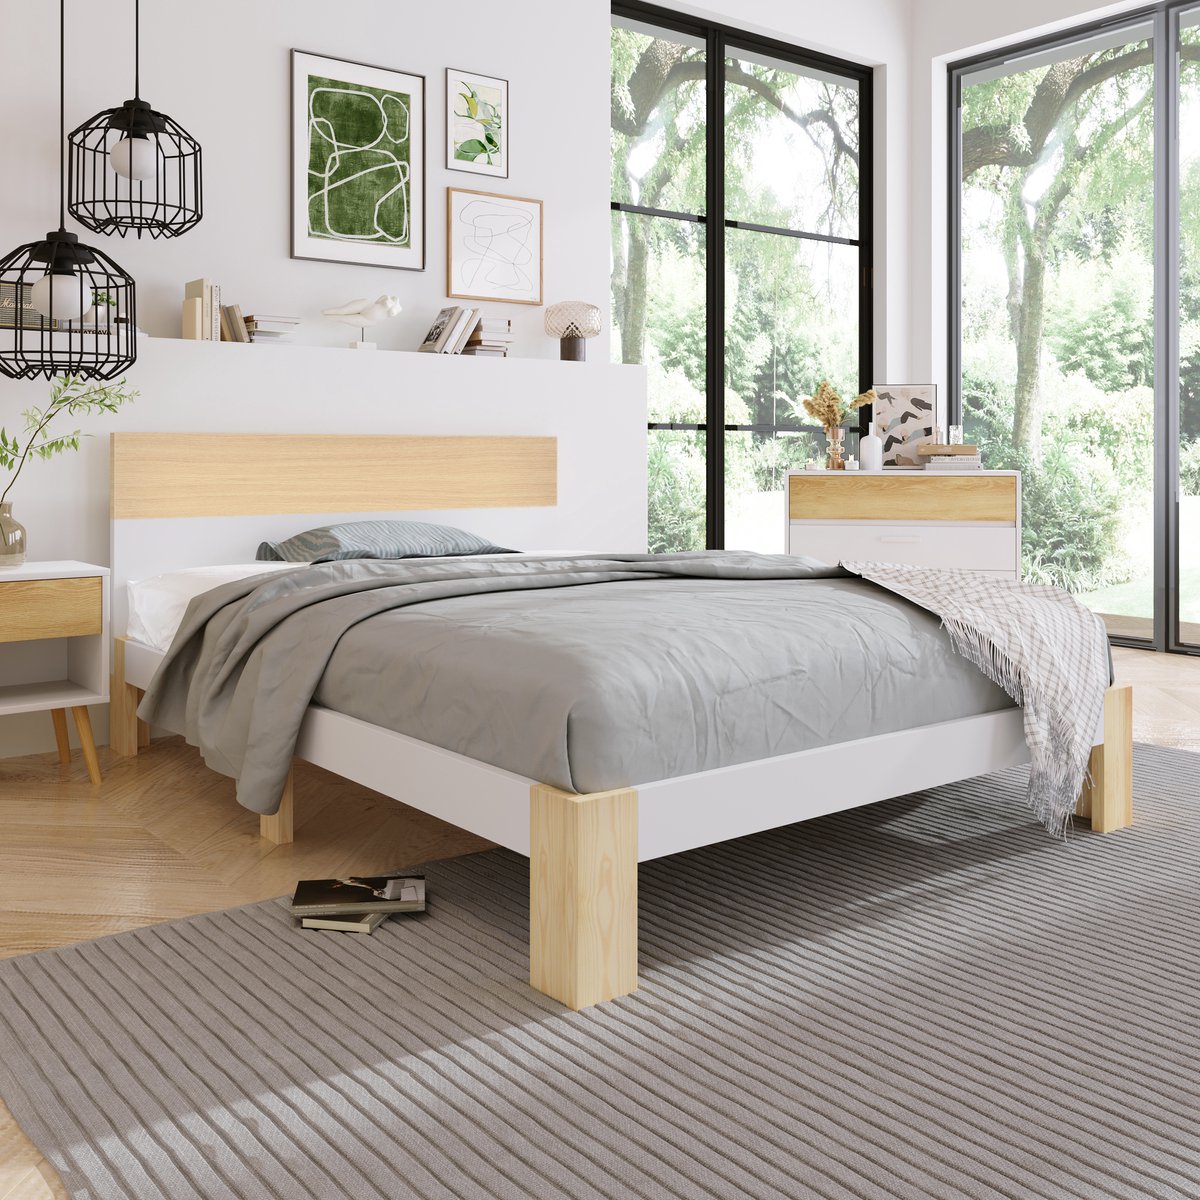 Houten bed tweepersoonsbed met hoofdeinde -Natuurlijk houten bed met lattenbodem-90x200 cm -Natuurlijk&Wit Klassieke landelijke stijl